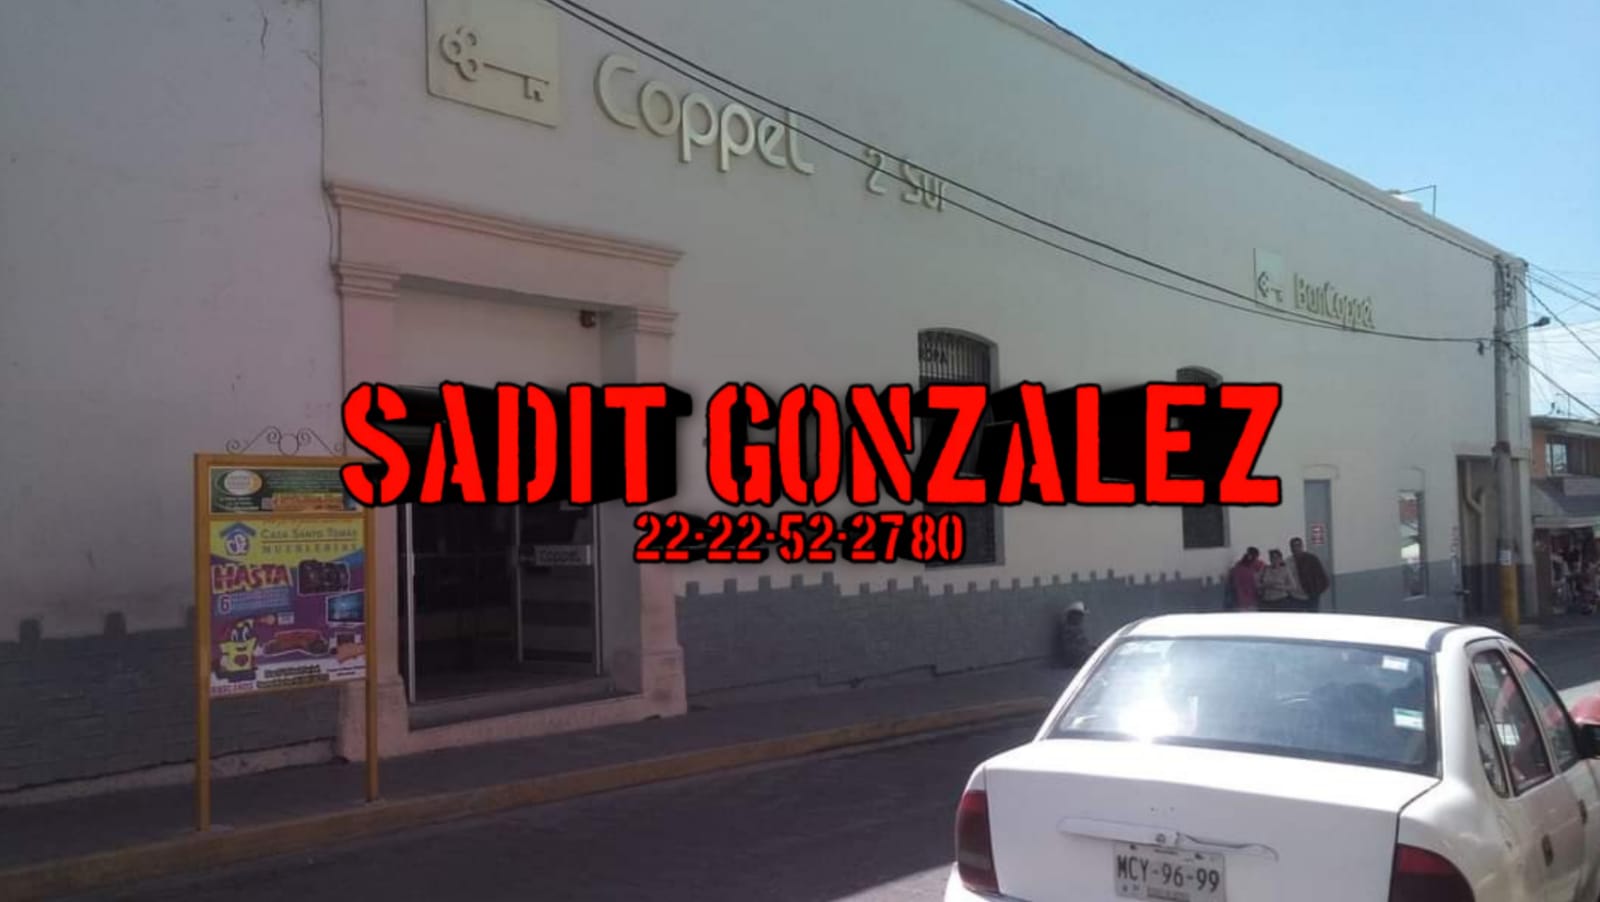 20 personas atracan Coppel en pleno centro de Tecamachalco